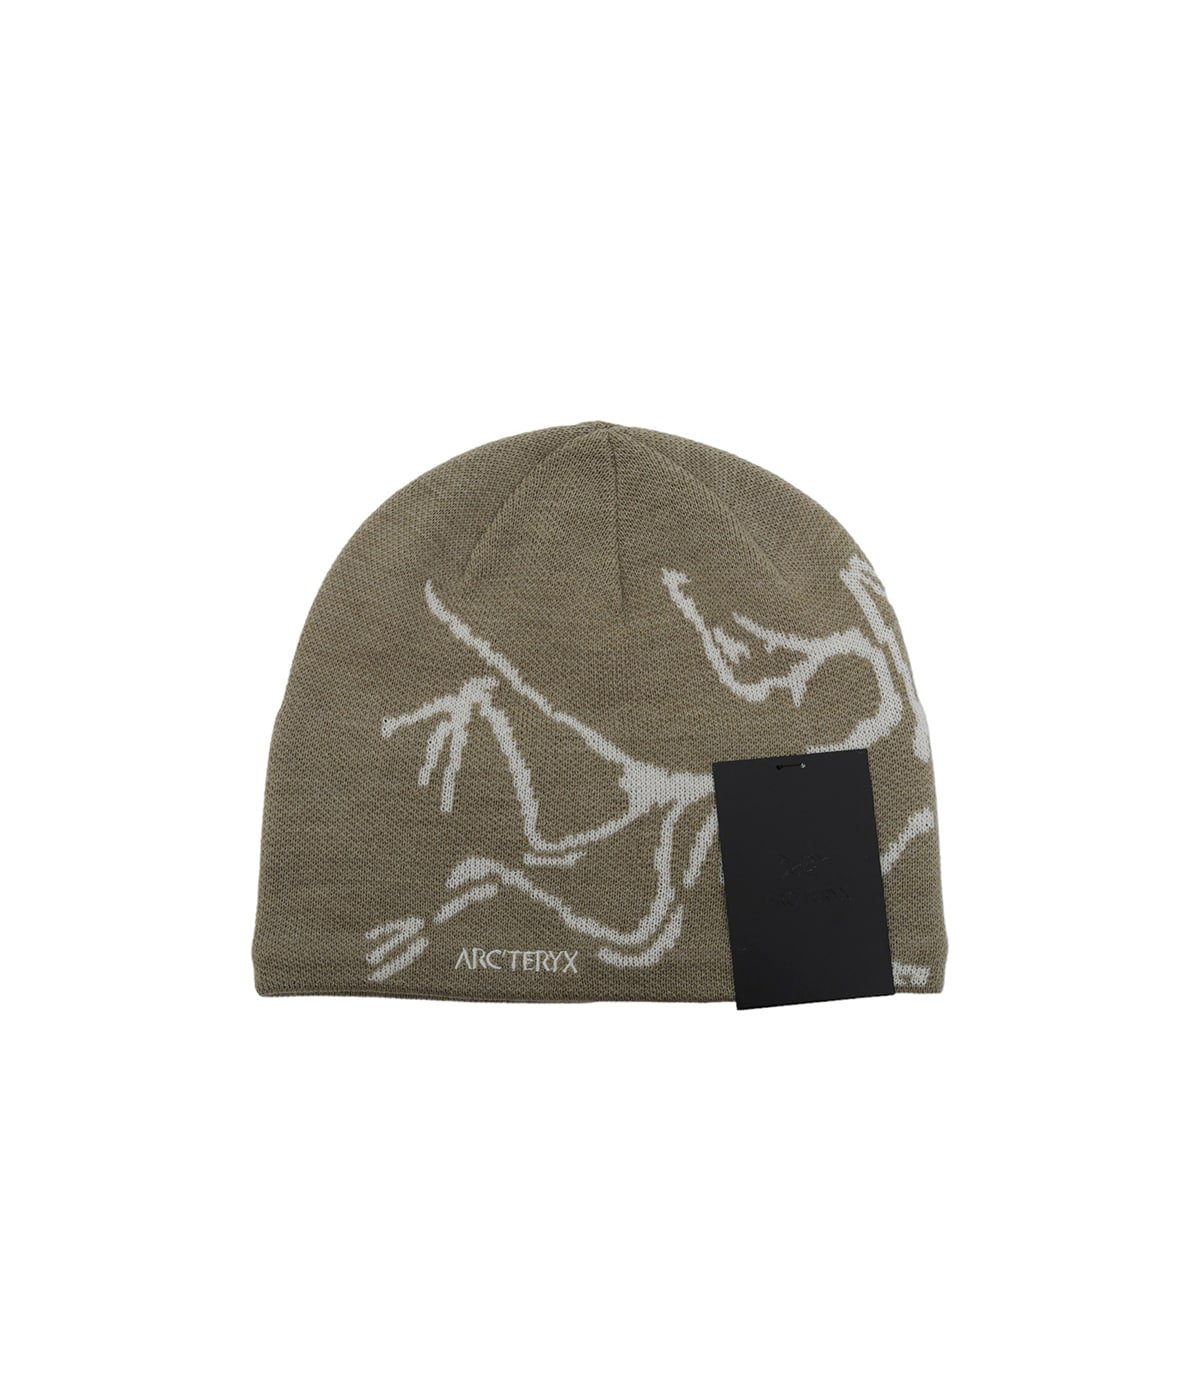 ARCTERYX(アークテリクス) BIRD HEAD TOQUE メンズ 帽子 - ニット帽